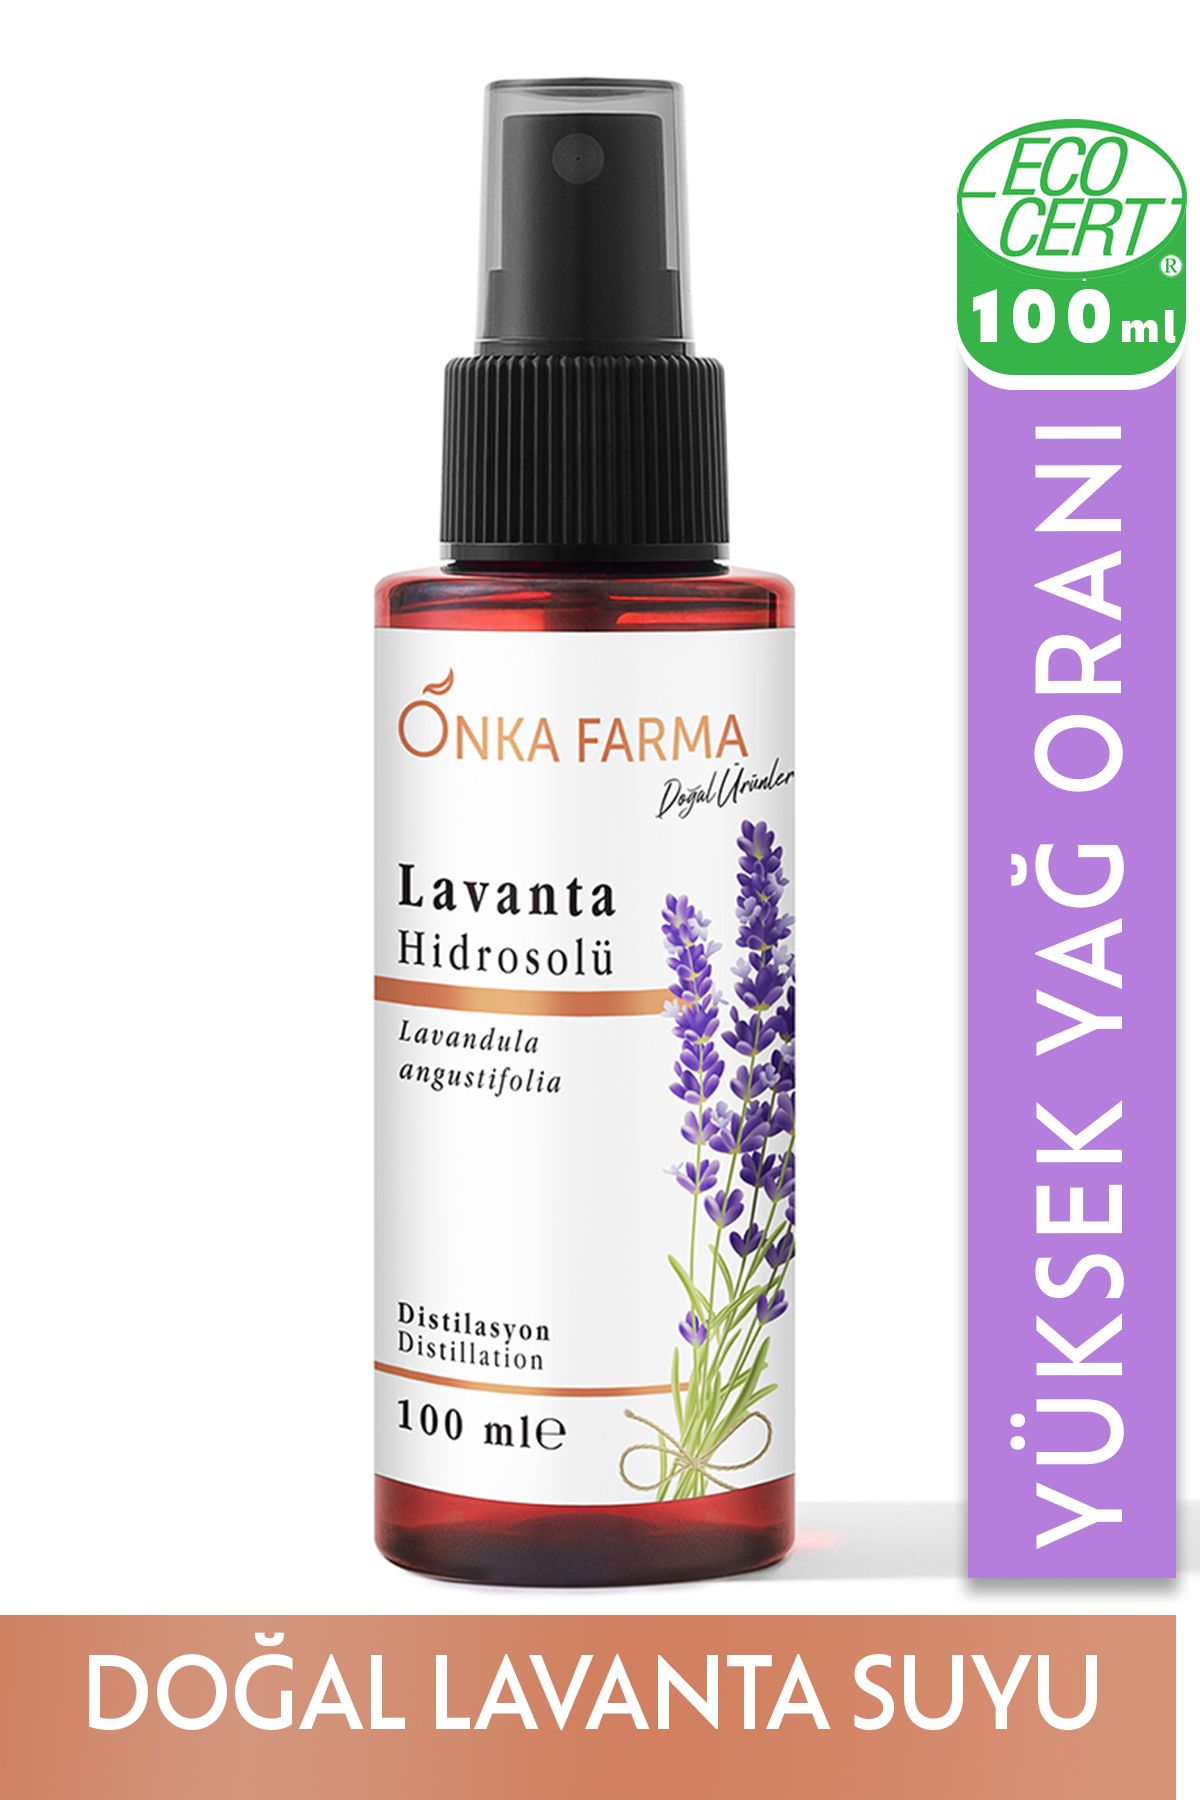 OnkaFarma Onka Farma Lavanta Suyu / Hidrosolü Tonik Yağı Alınmamış Doğal Içerik